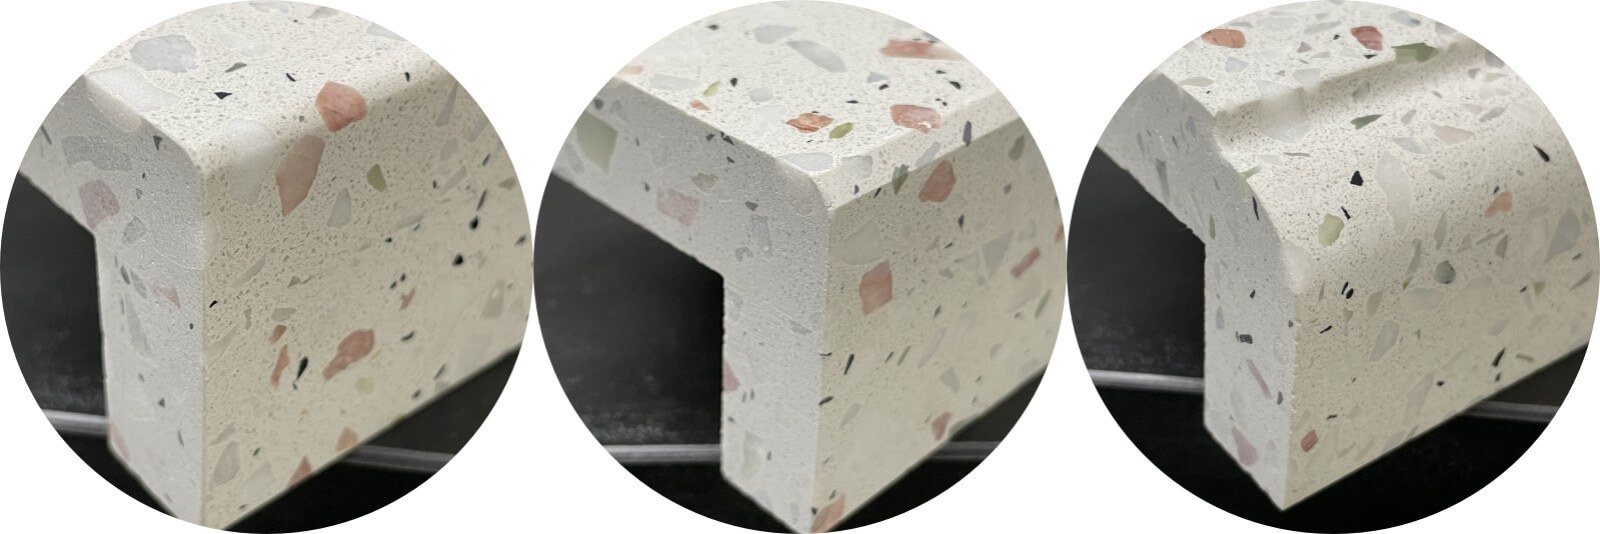 Quartz Stone, Marble & Grainte Countertops Fabrication For Hotel Condo Project 5